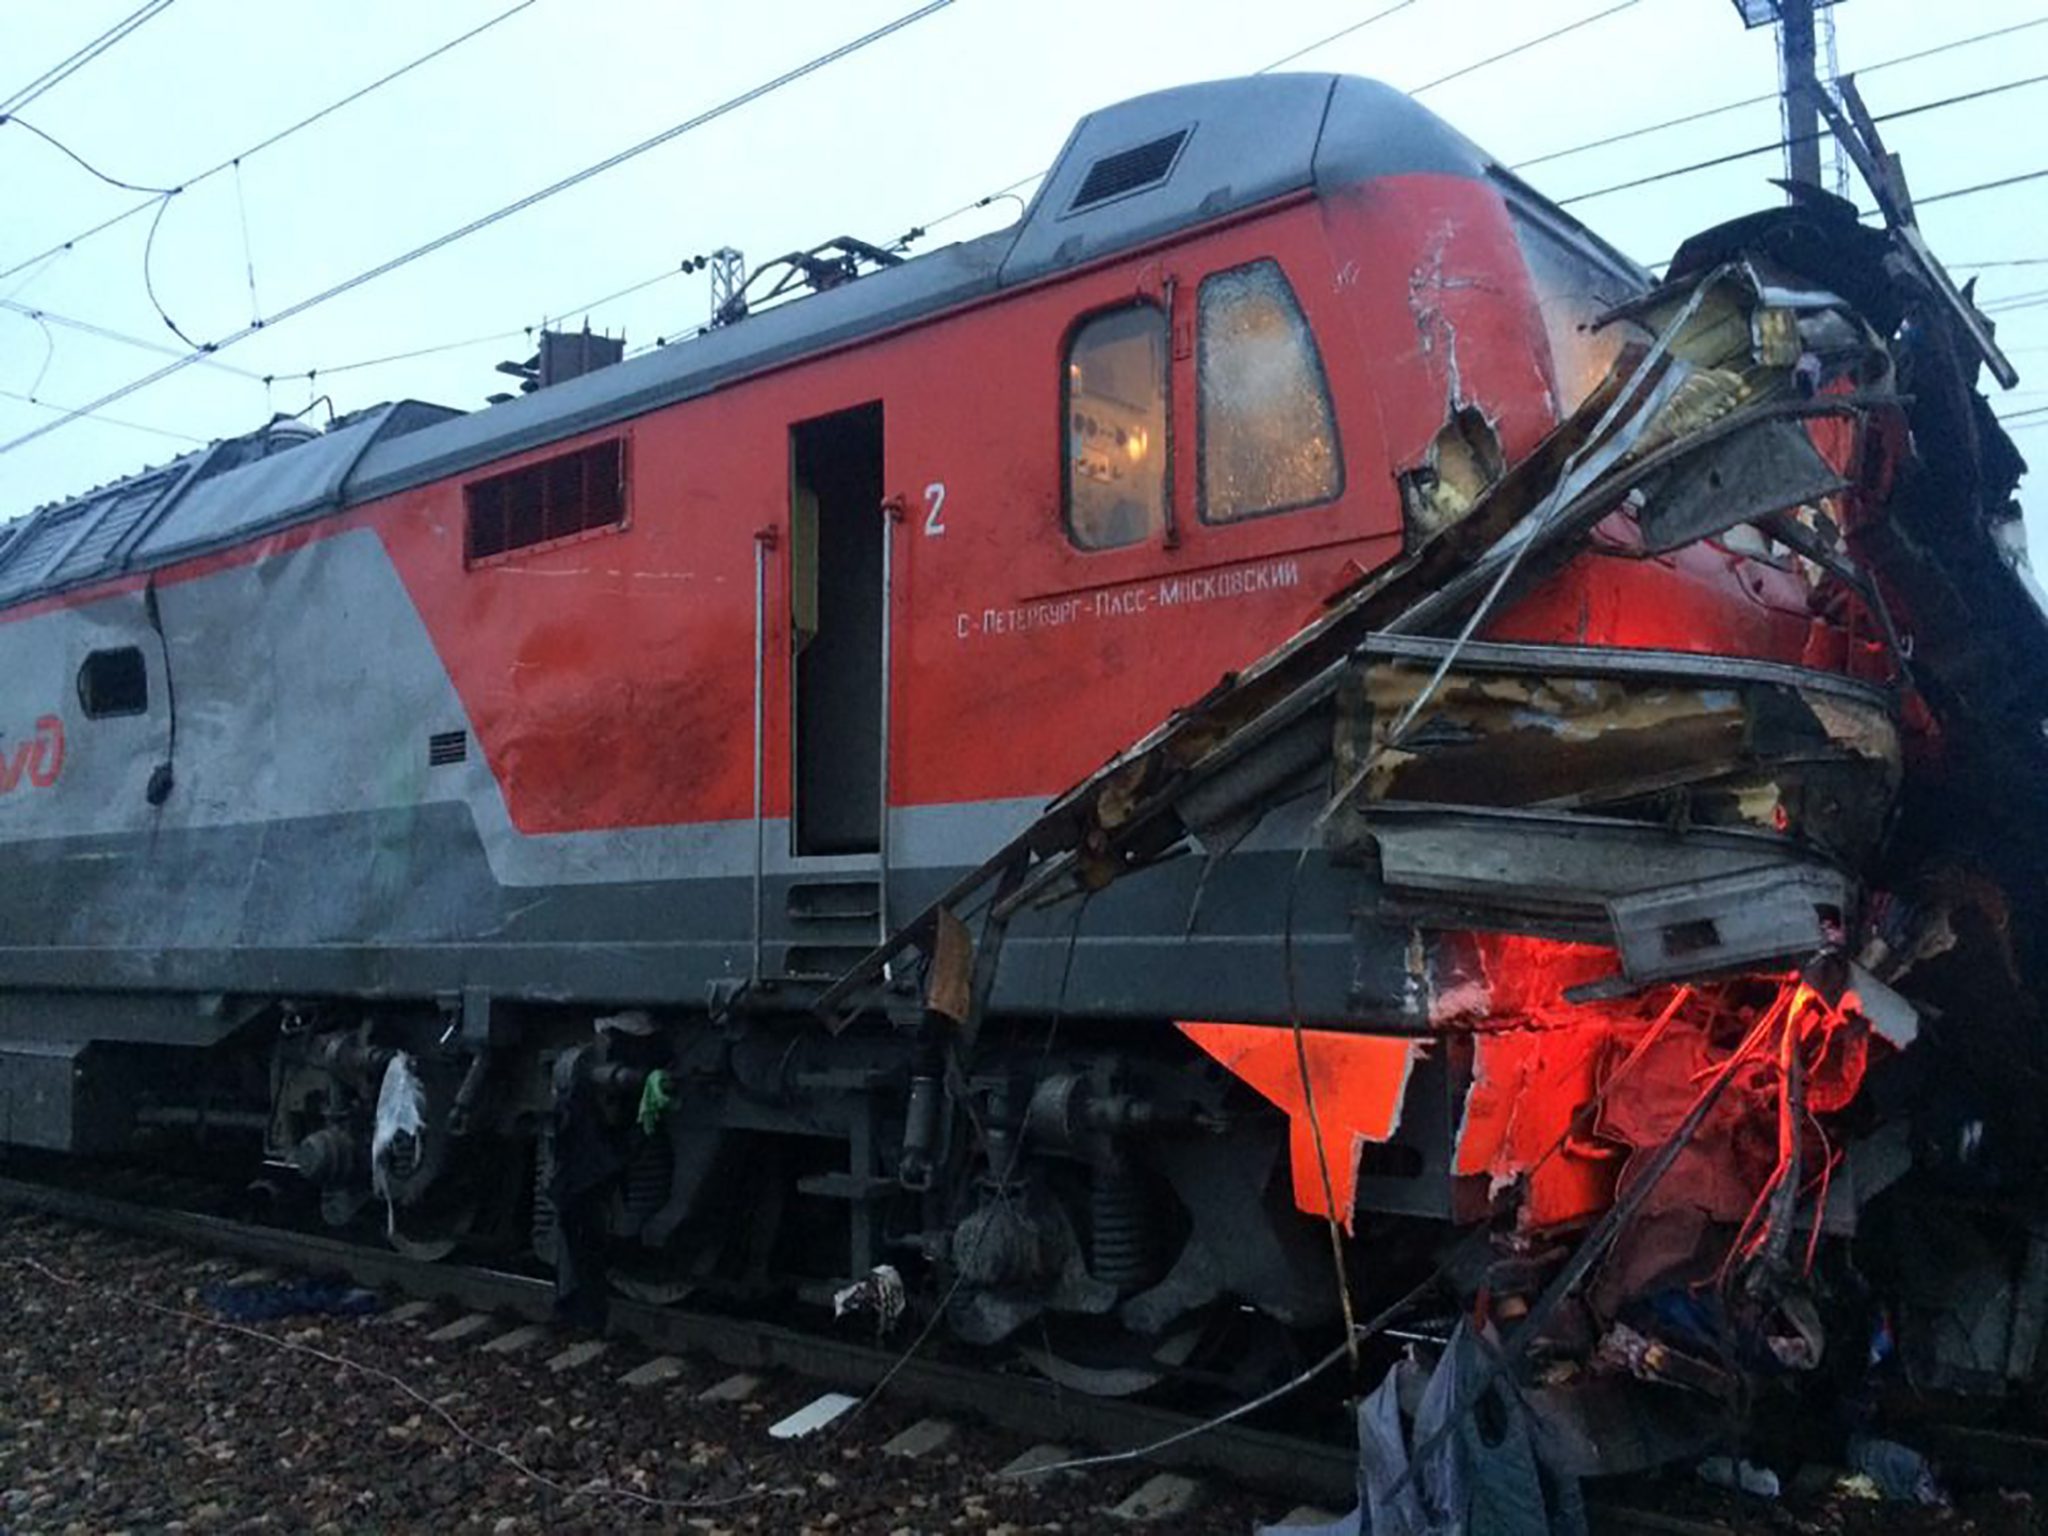   مقتل 3 أشخاص وإصابة 9 فى حادث قطار بروسيا